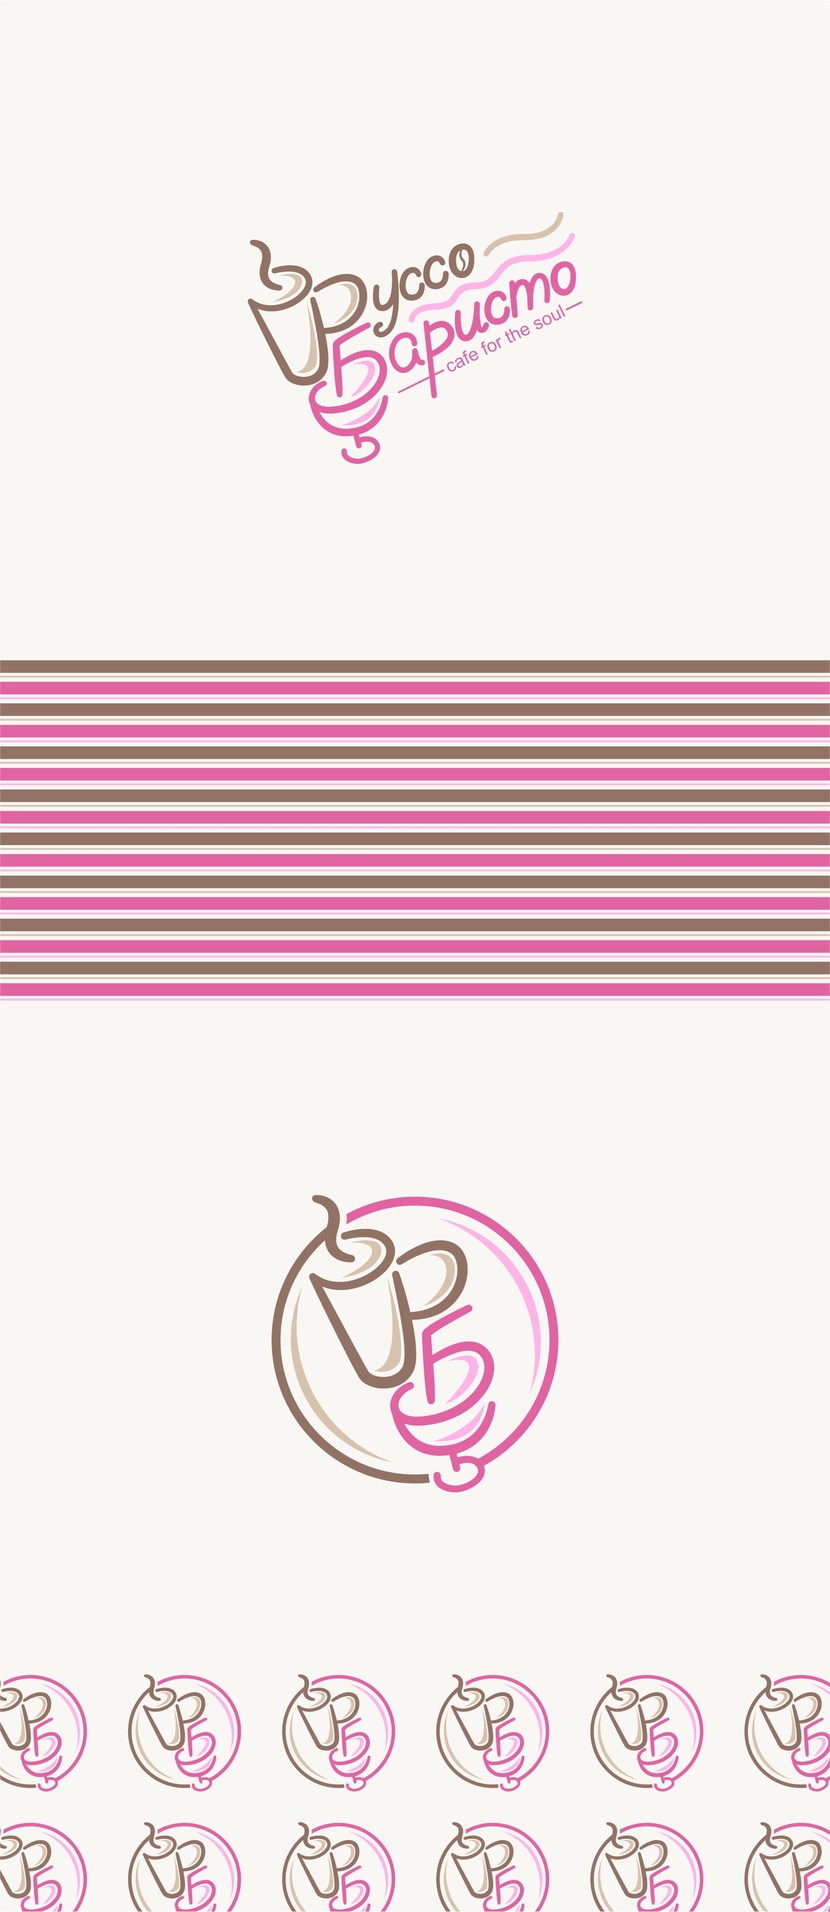 Здравствуйте! Обновила цвета, исправила букву а - Создание логотипа для Кофейни - алкобара "Руссо баристо"